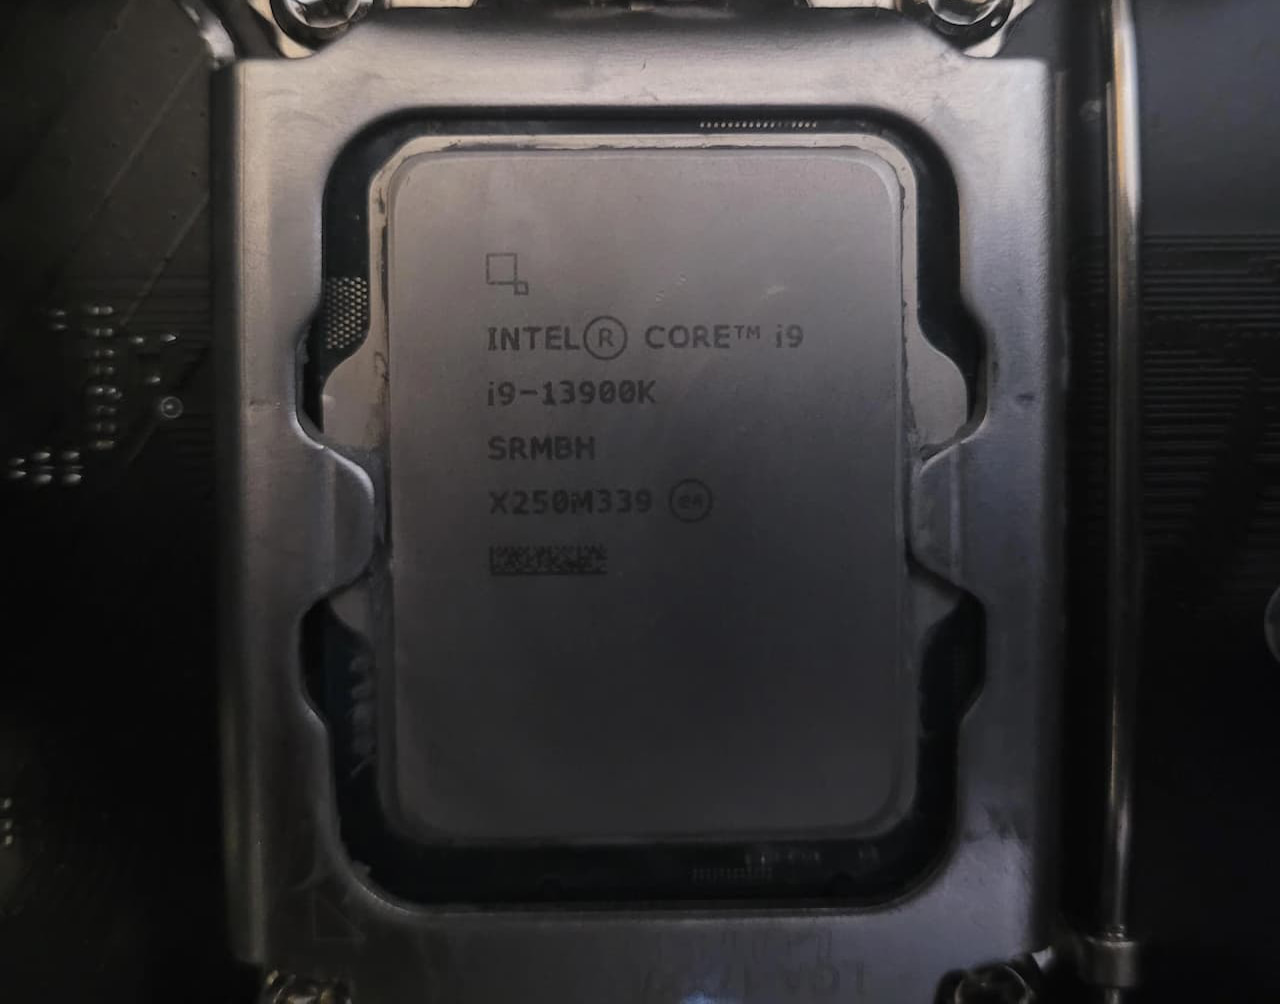 『Core i9-13900K』と刻印された『Core i7-13700K』